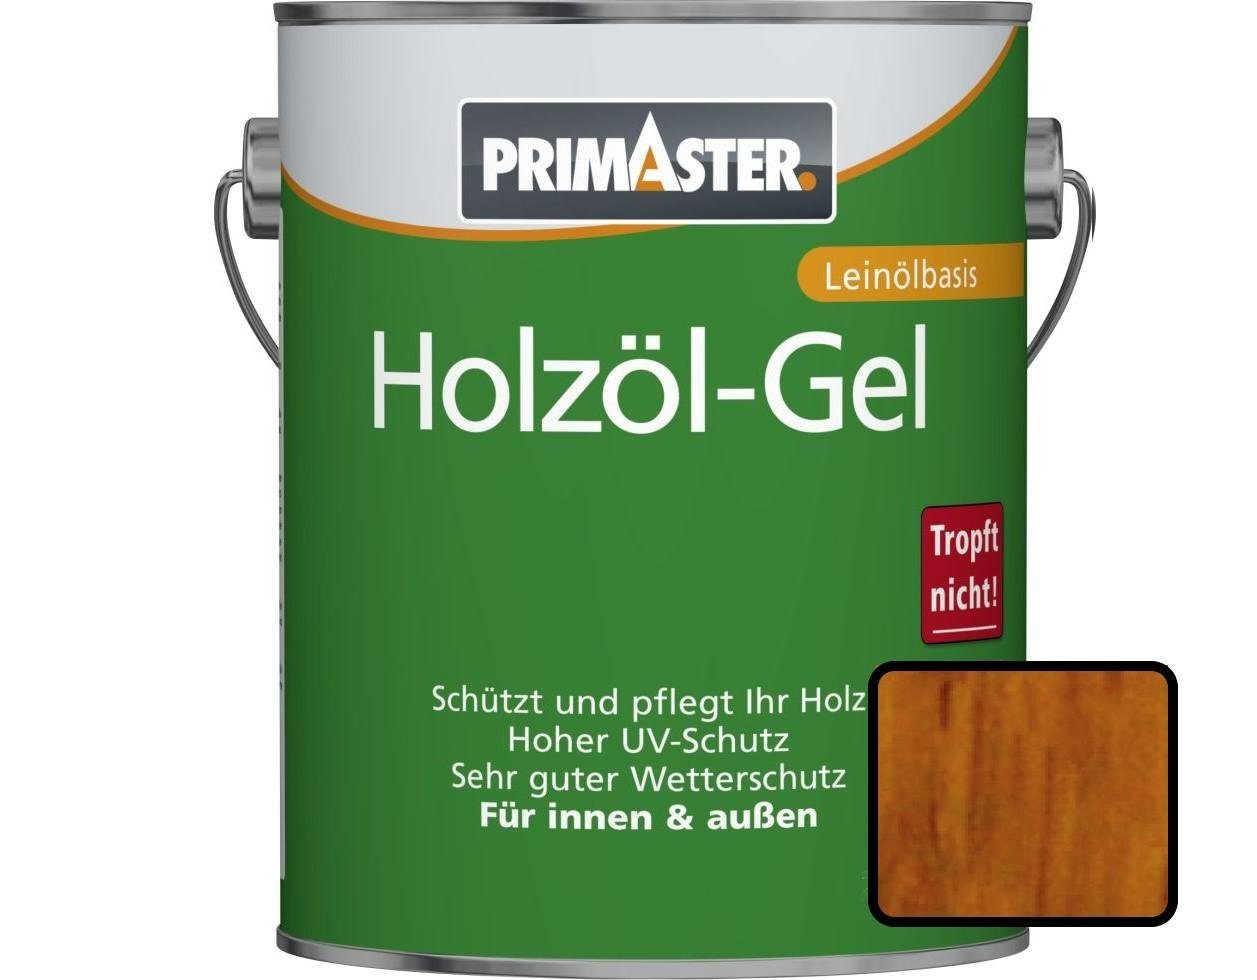 eiche 750 ml Primaster Primaster Hartholzöl Holzöl-Gel